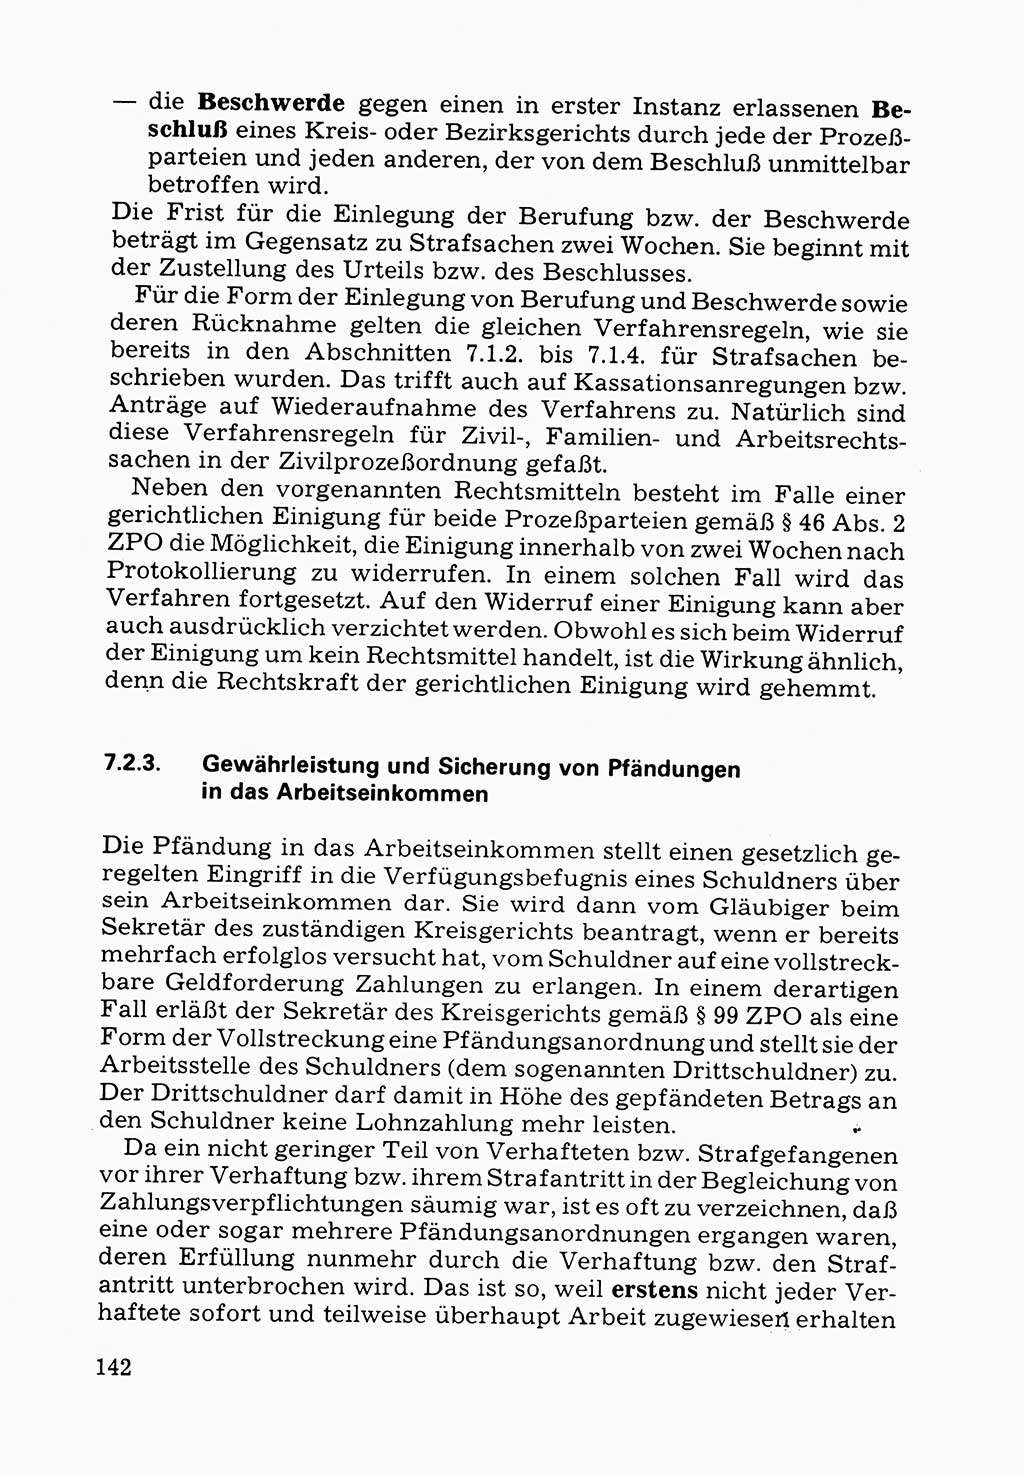 Verwaltungsmäßige Aufgaben beim Vollzug der Untersuchungshaft (U-Haft) sowie der Strafen mit Freiheitsentzug (SV) [Deutsche Demokratische Republik (DDR)] 1980, Seite 142 (Aufg. Vollz. U-Haft SV DDR 1980, S. 142)